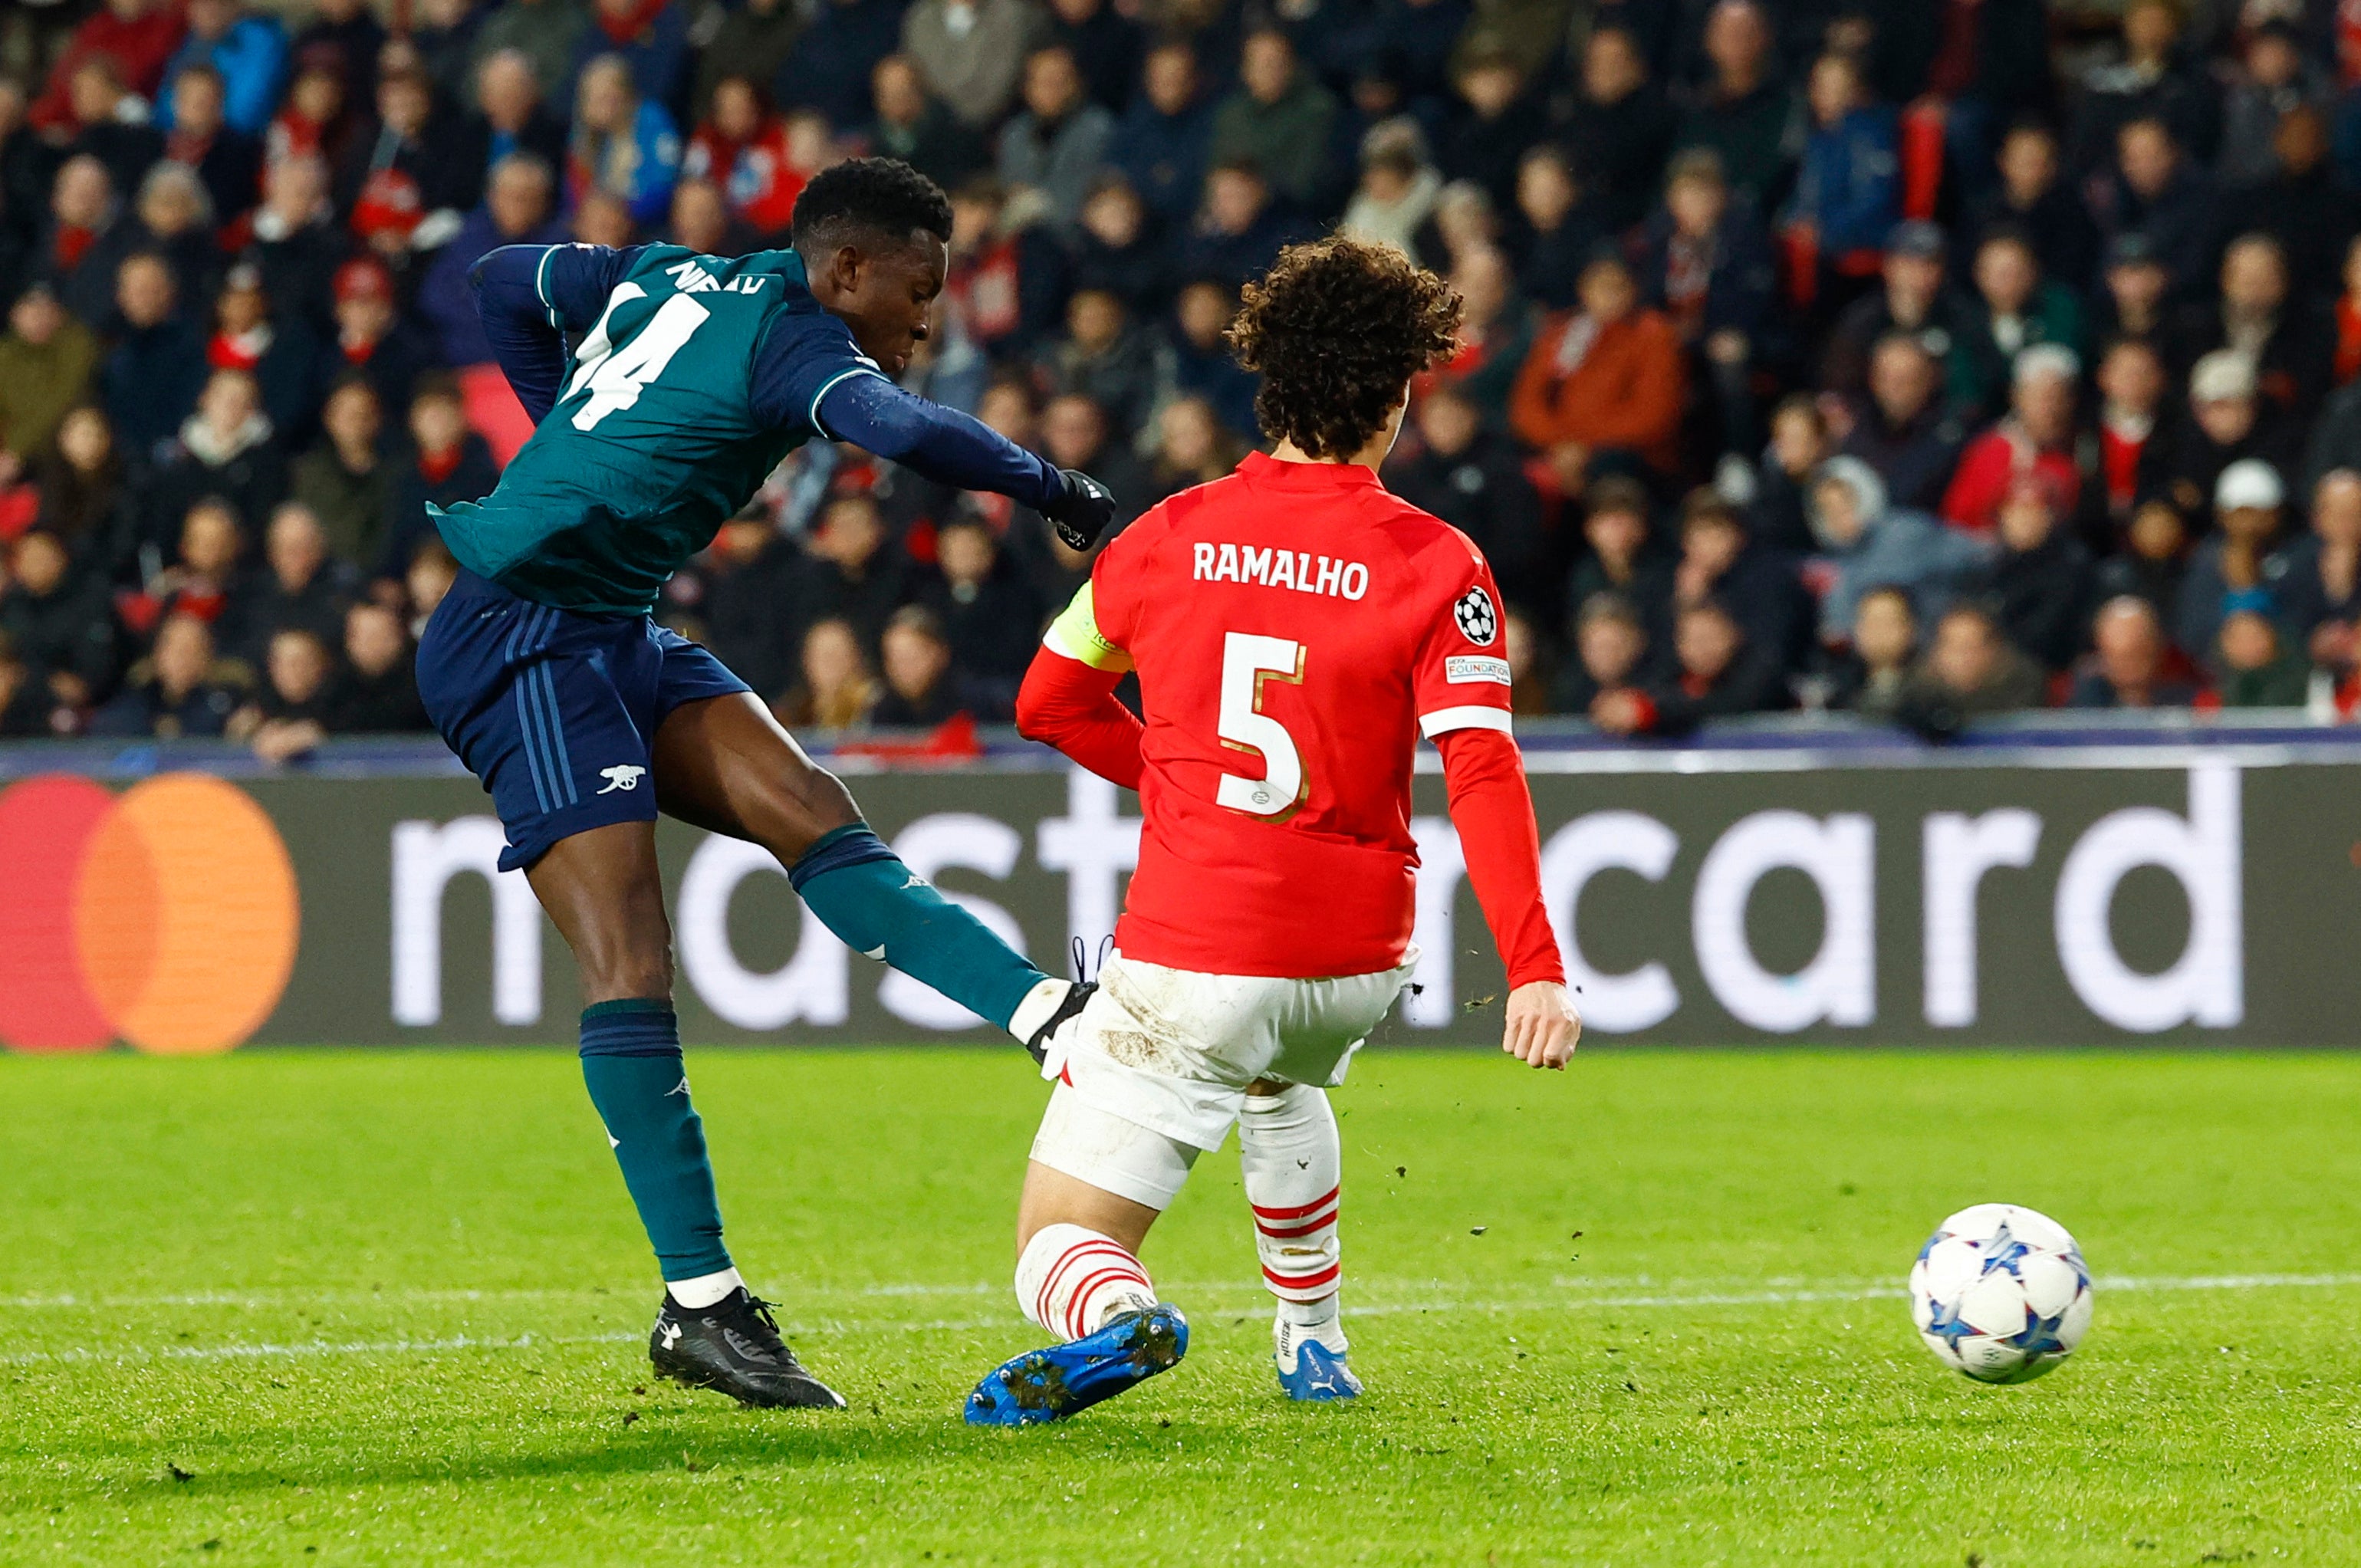 Eddie Nketiah’s first Champions League goal gave Arsenal the lead